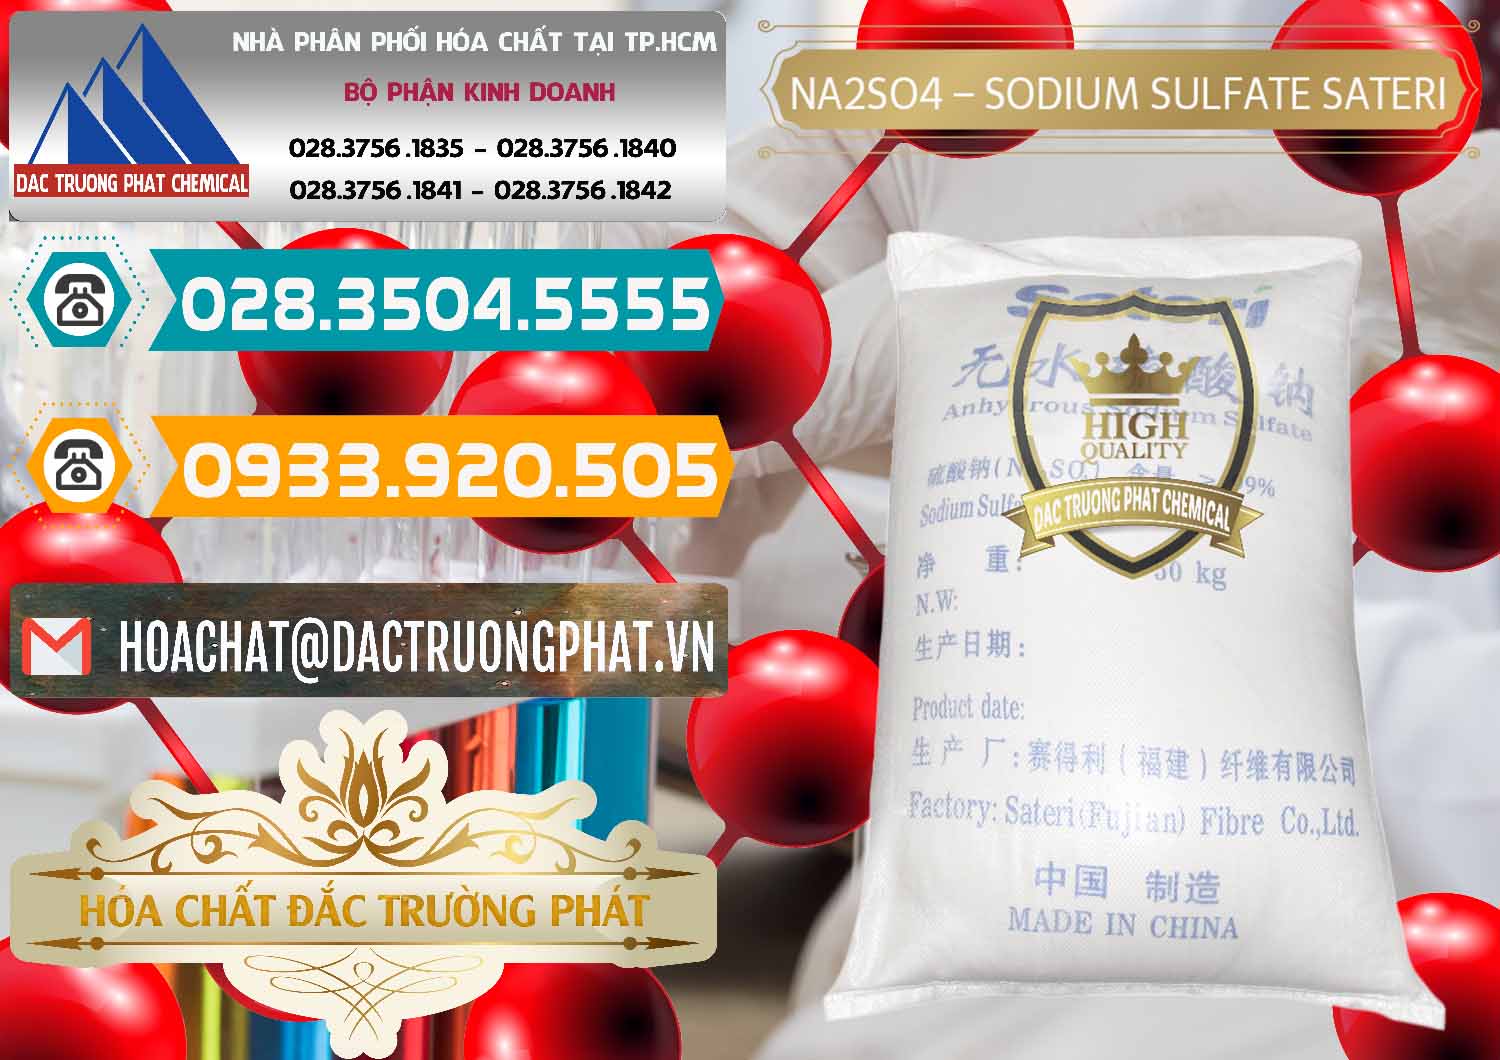 Cty chuyên nhập khẩu & bán Sodium Sulphate - Muối Sunfat Na2SO4 Sateri Trung Quốc China - 0100 - Cty cung cấp & bán hóa chất tại TP.HCM - congtyhoachat.vn